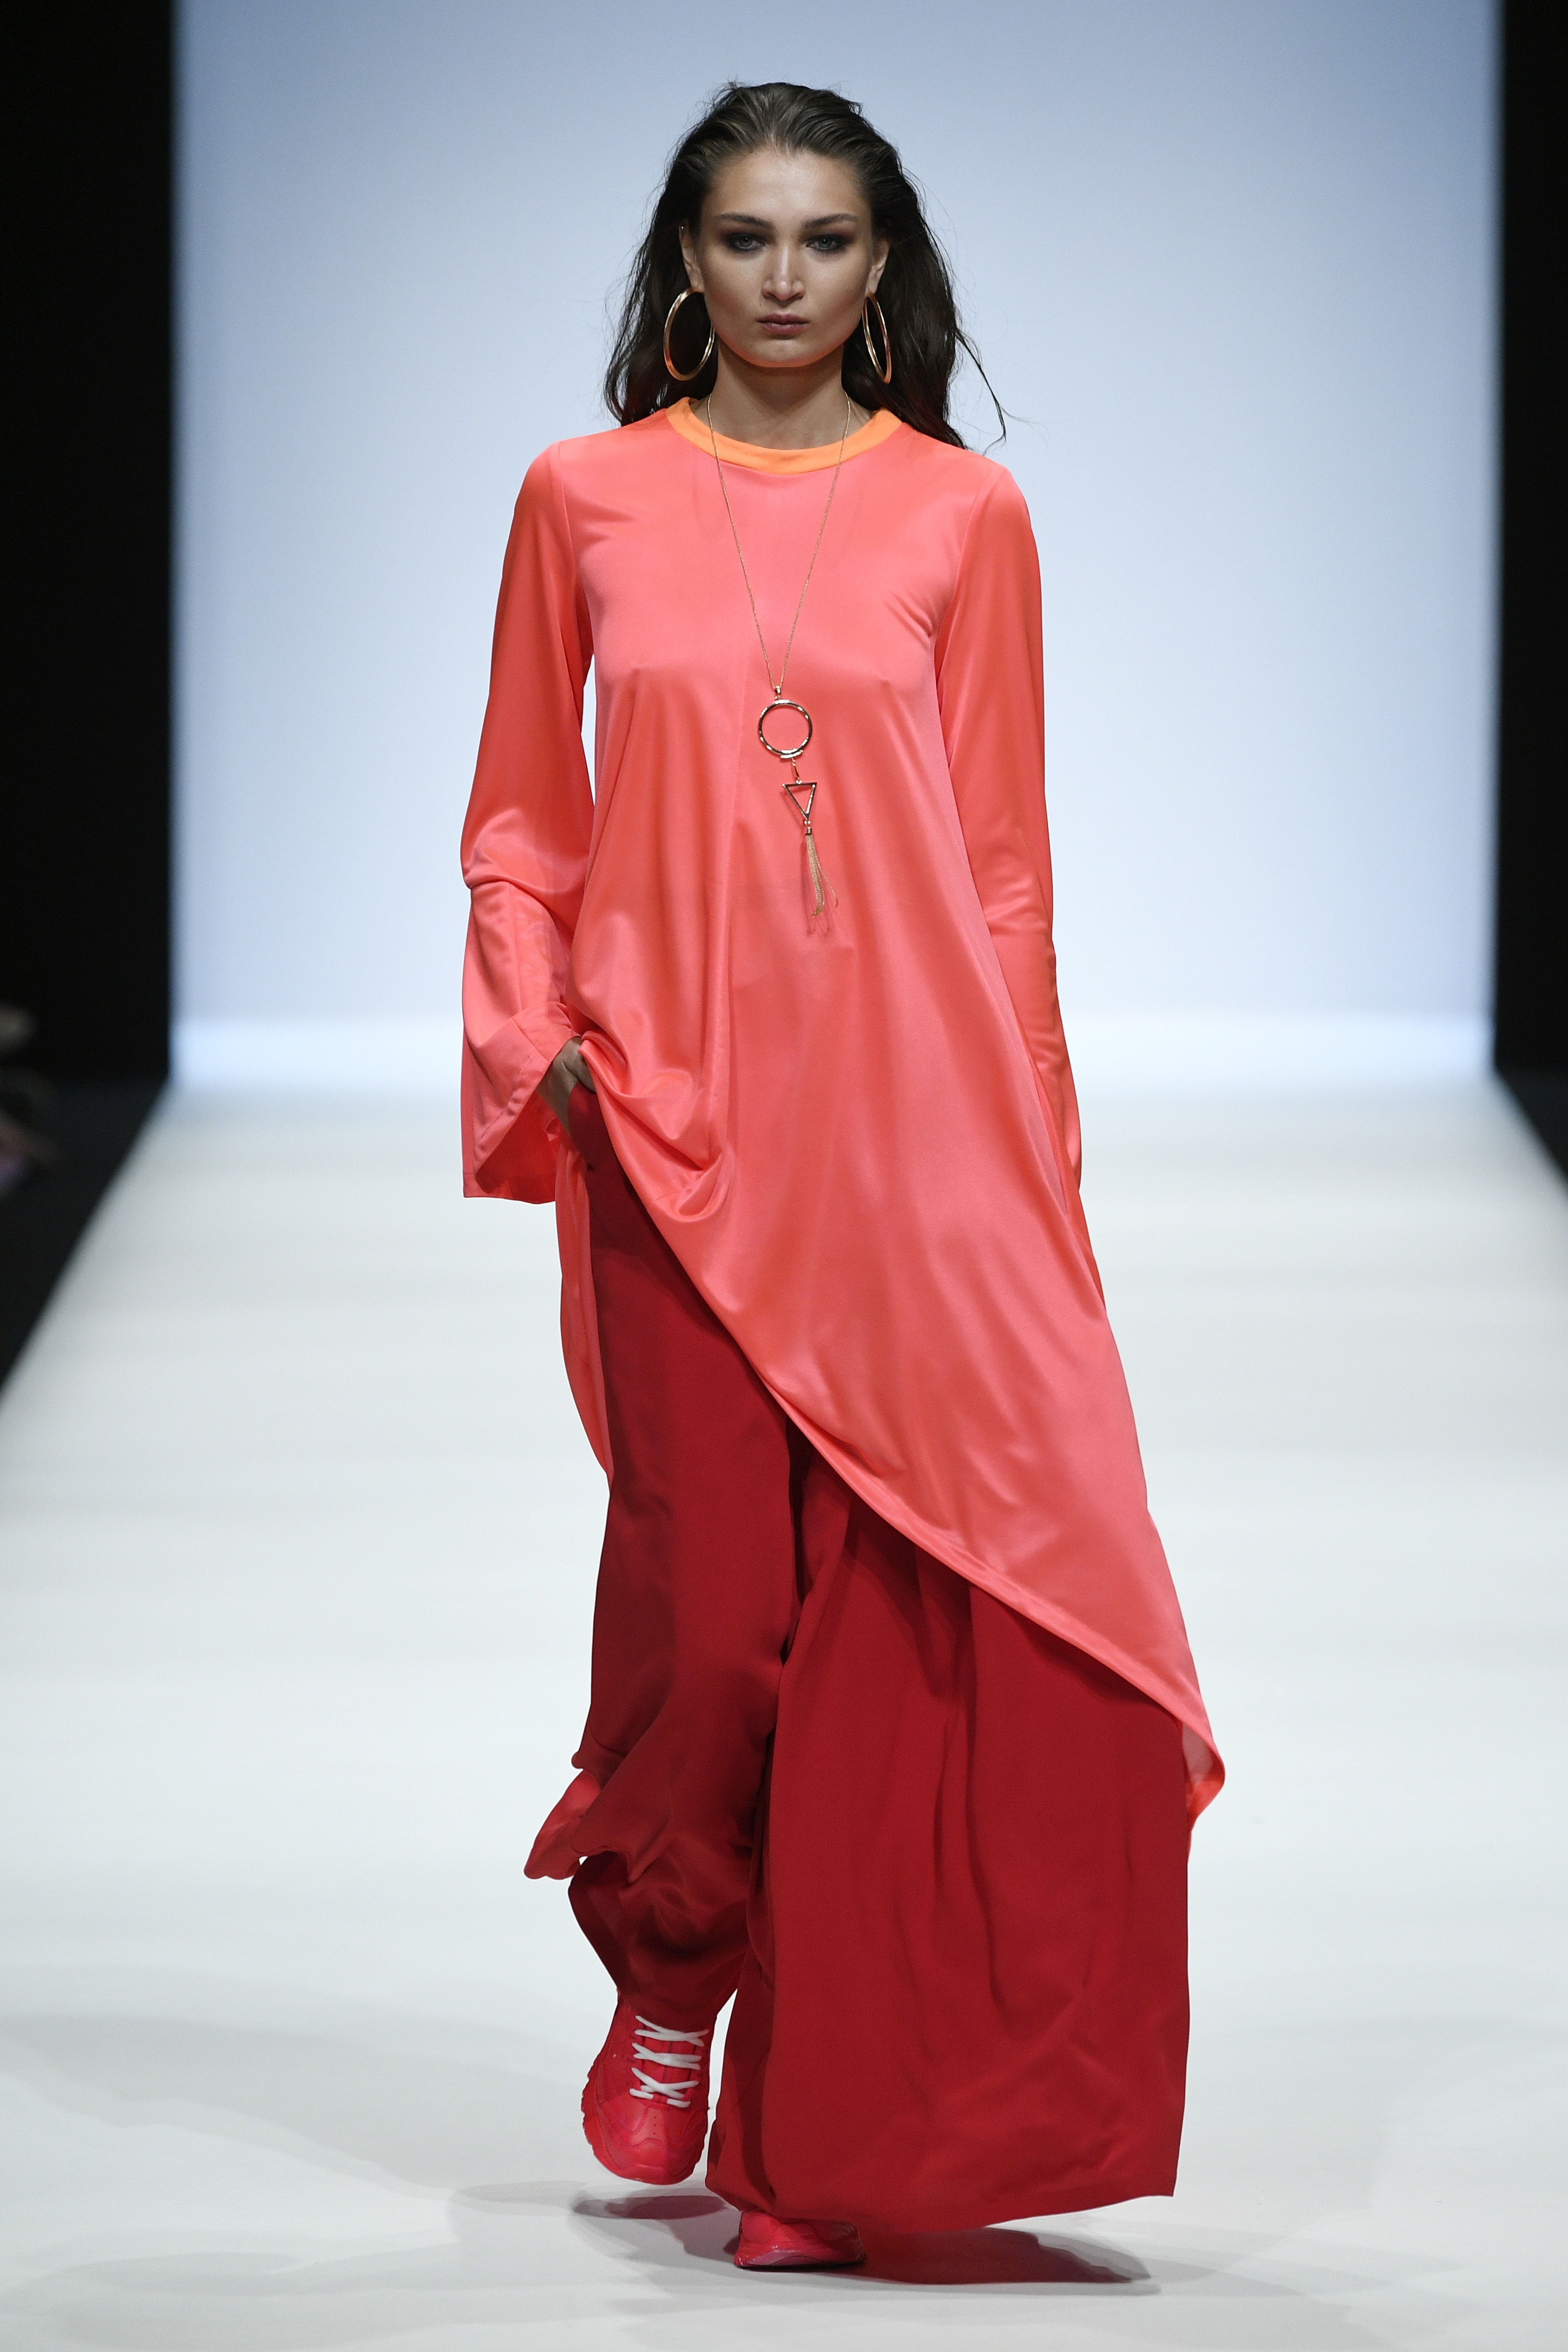 XL-Creolen und eine goldfarbene Kette im Grafikdesign komplettieren das extravagante, asymmetrische Oversized-Dress auf dem Catwalk der Fashion Week